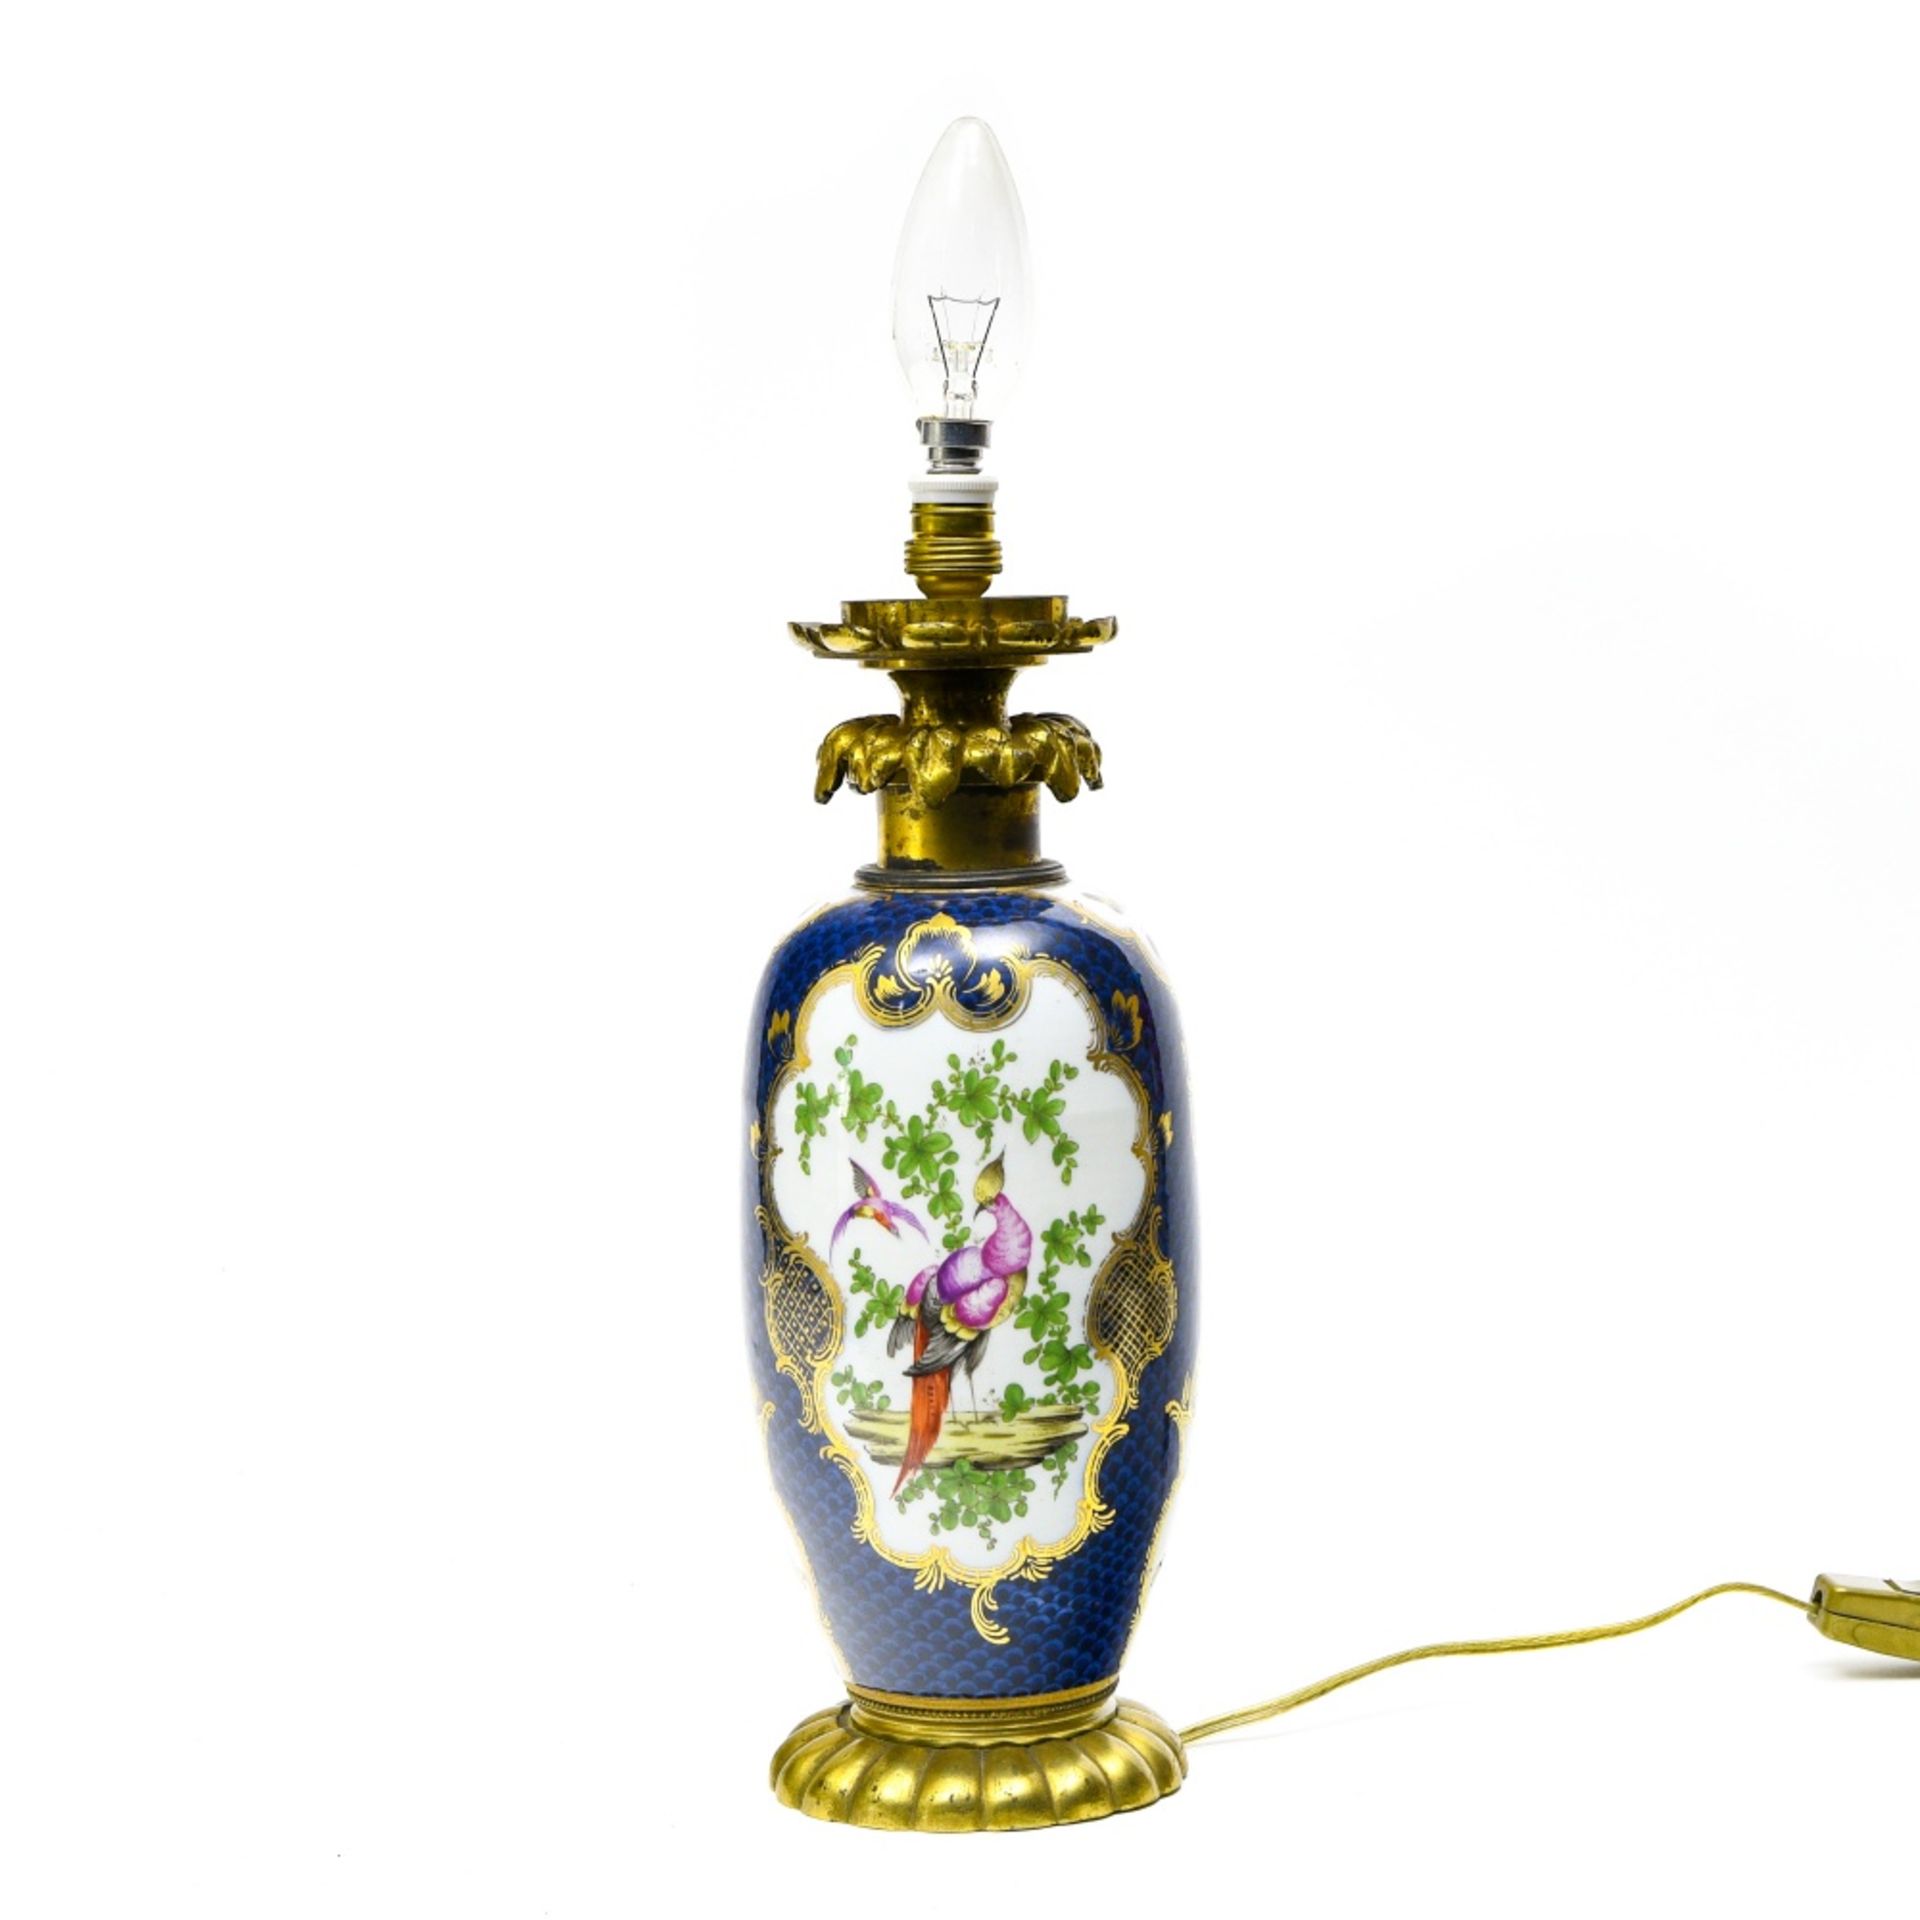 Svres-style French work Vase with birds, butterflies and ladybugs, Porcelain, converted to a lamp